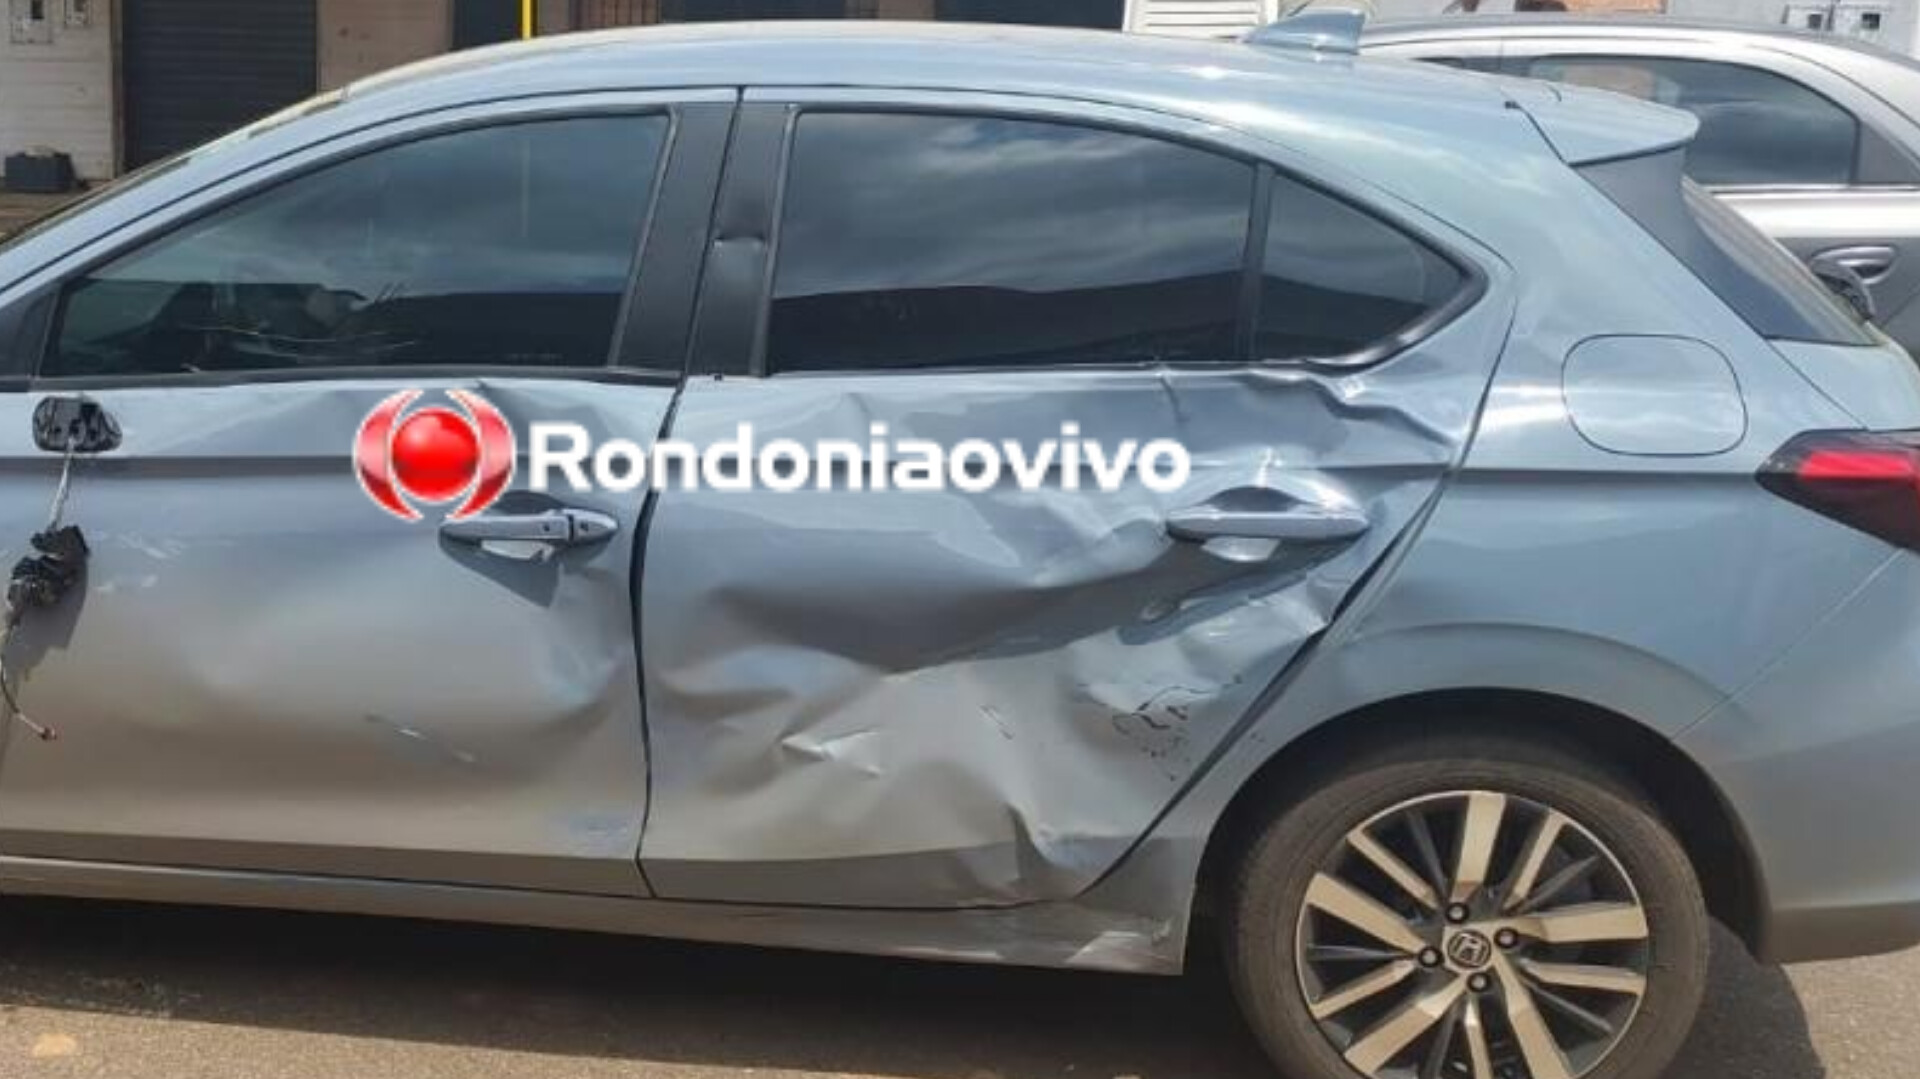 NA ABUNÃ: Motoboy de delivery avança preferencial e bate em cheio contra carro de advogado 